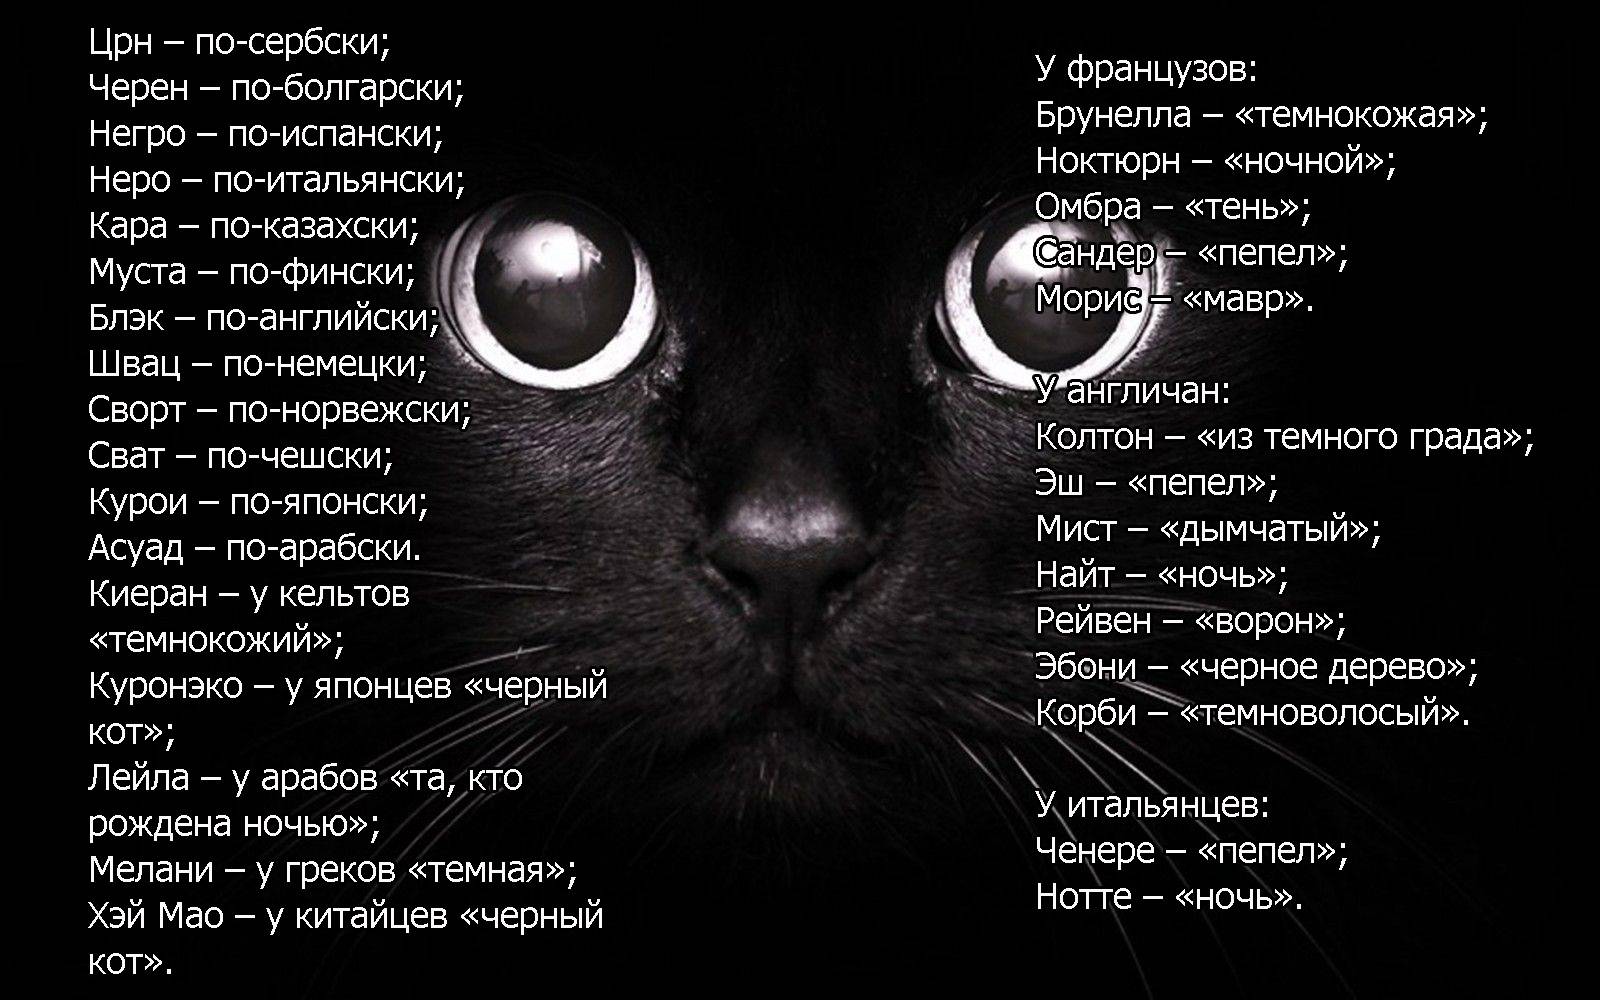 Русские клички | имена для кошек со значением | тайна имени